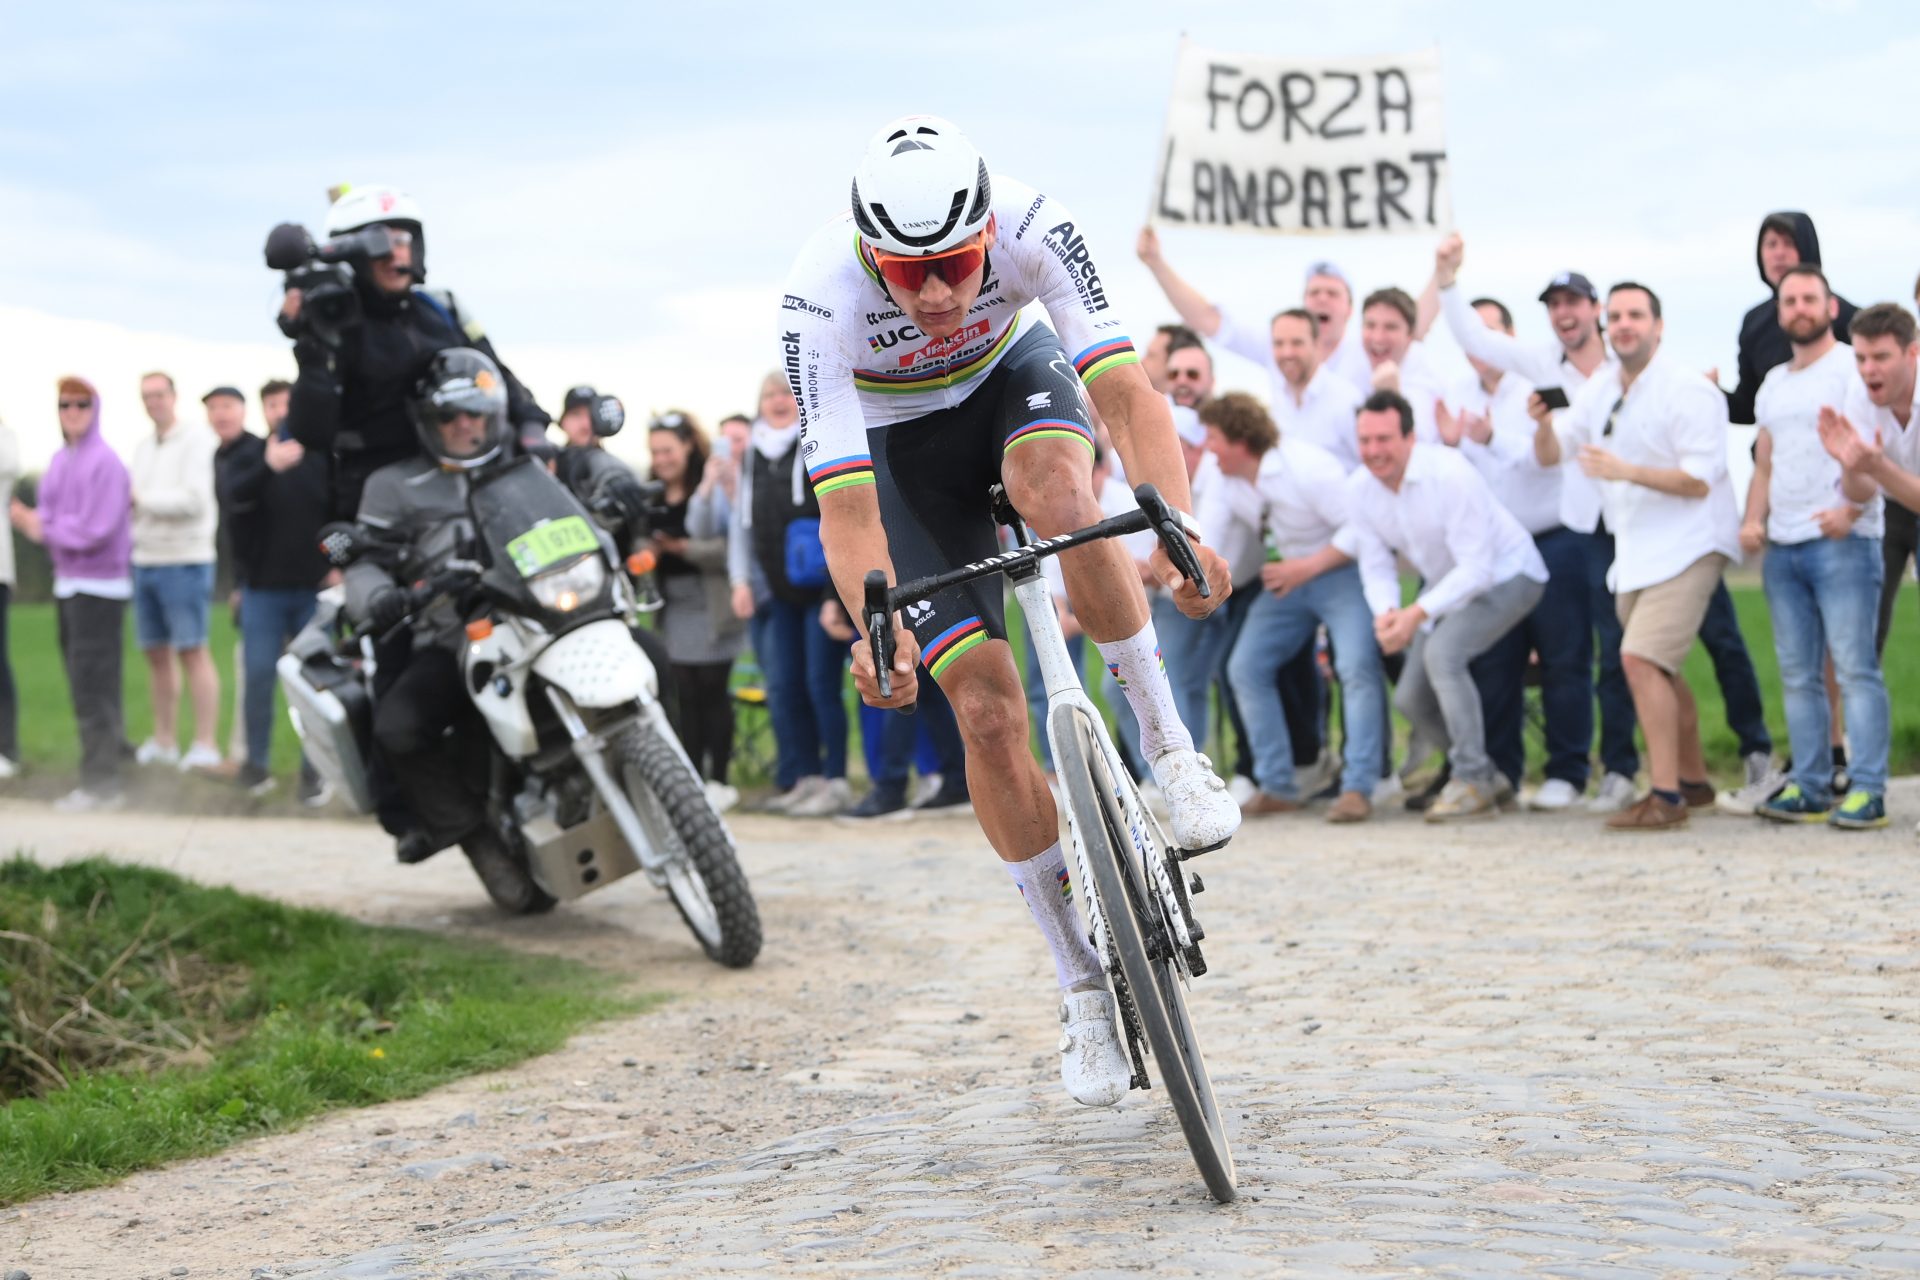 Parijs-Roubaix: een buitenaardse MVDP en andere winnaars in afgelopen jaren